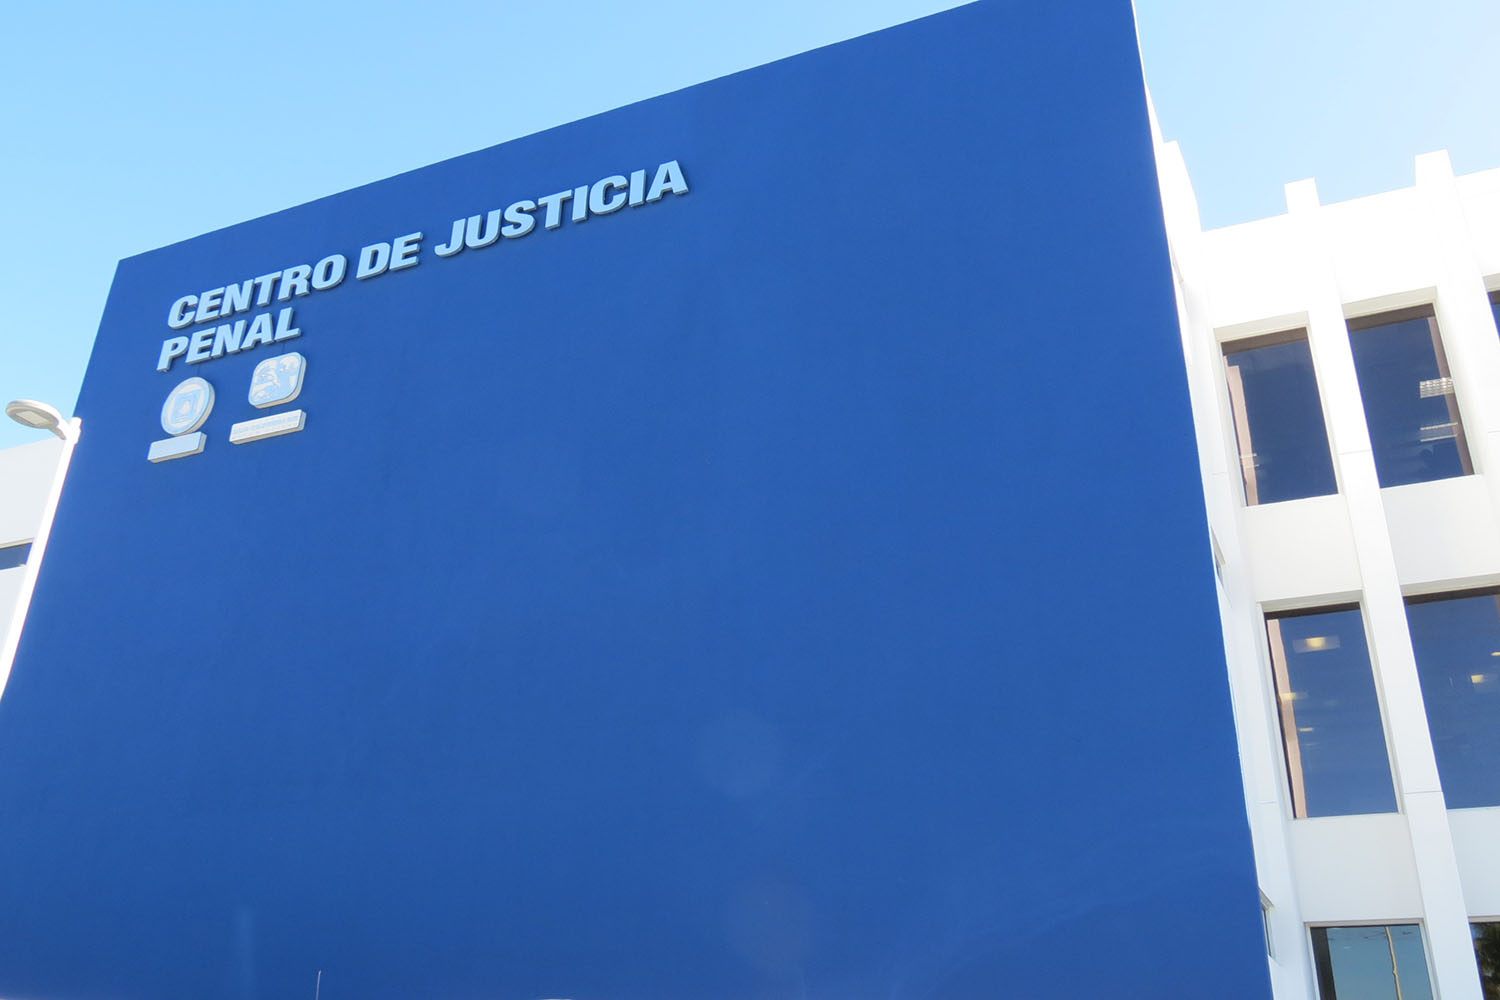 centro justicia penal bcs